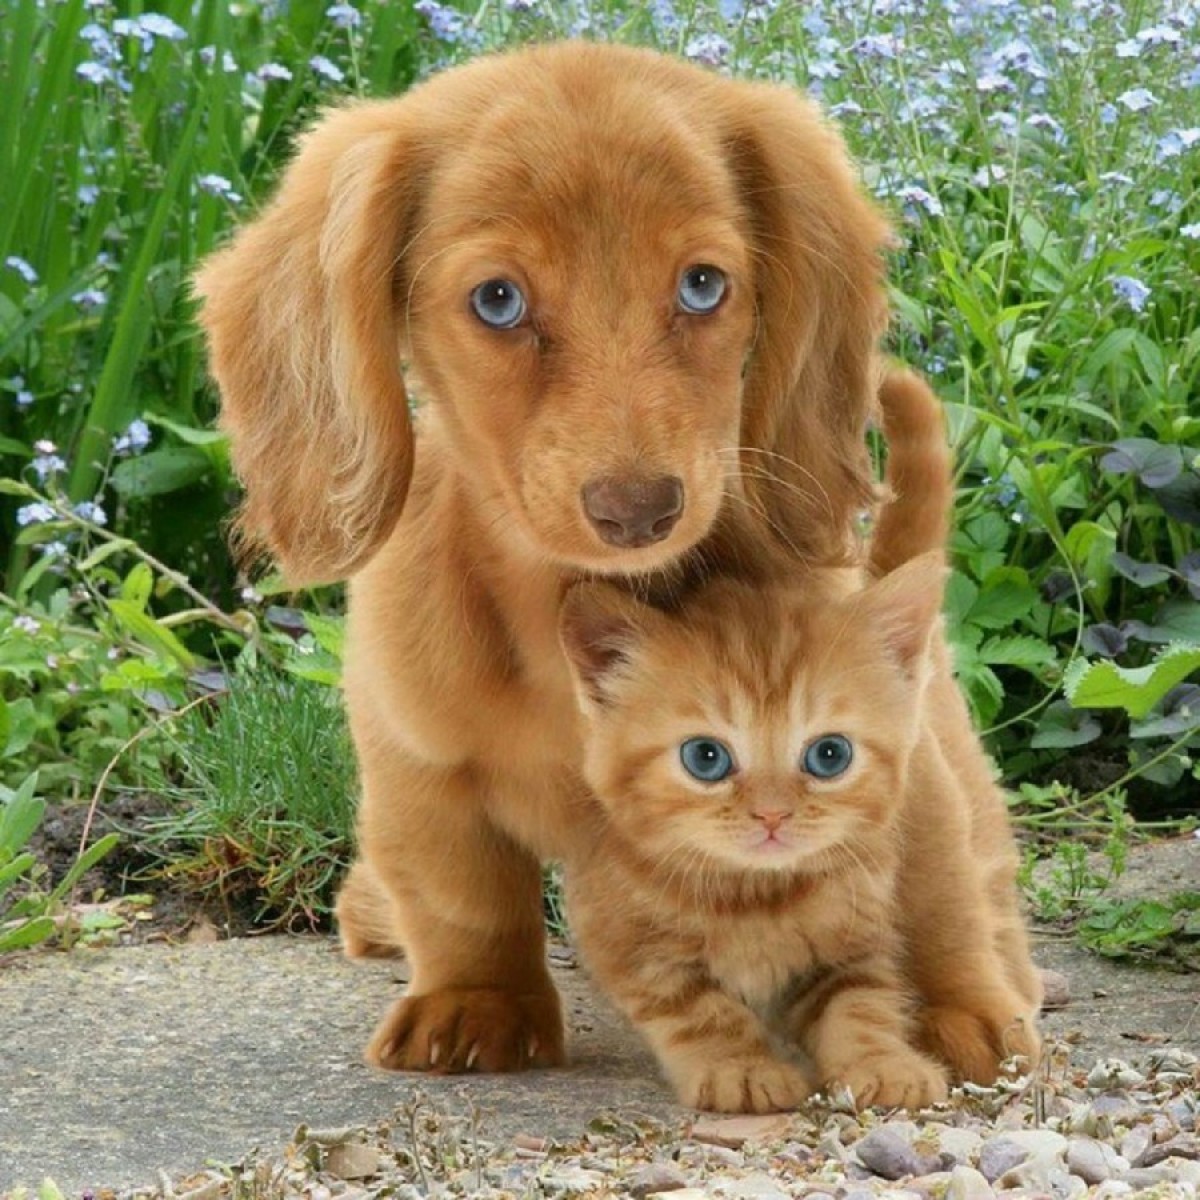 Оба рыжие и с голубыми глазами, щенок и котенок, умиляют Интернет